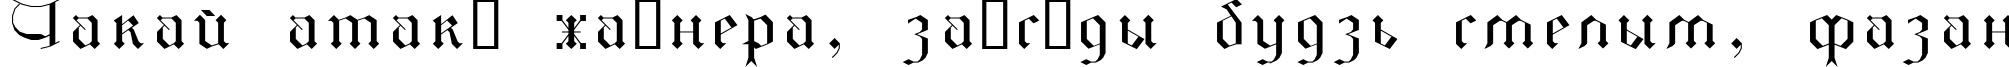 Пример написания шрифтом GothicI текста на белорусском